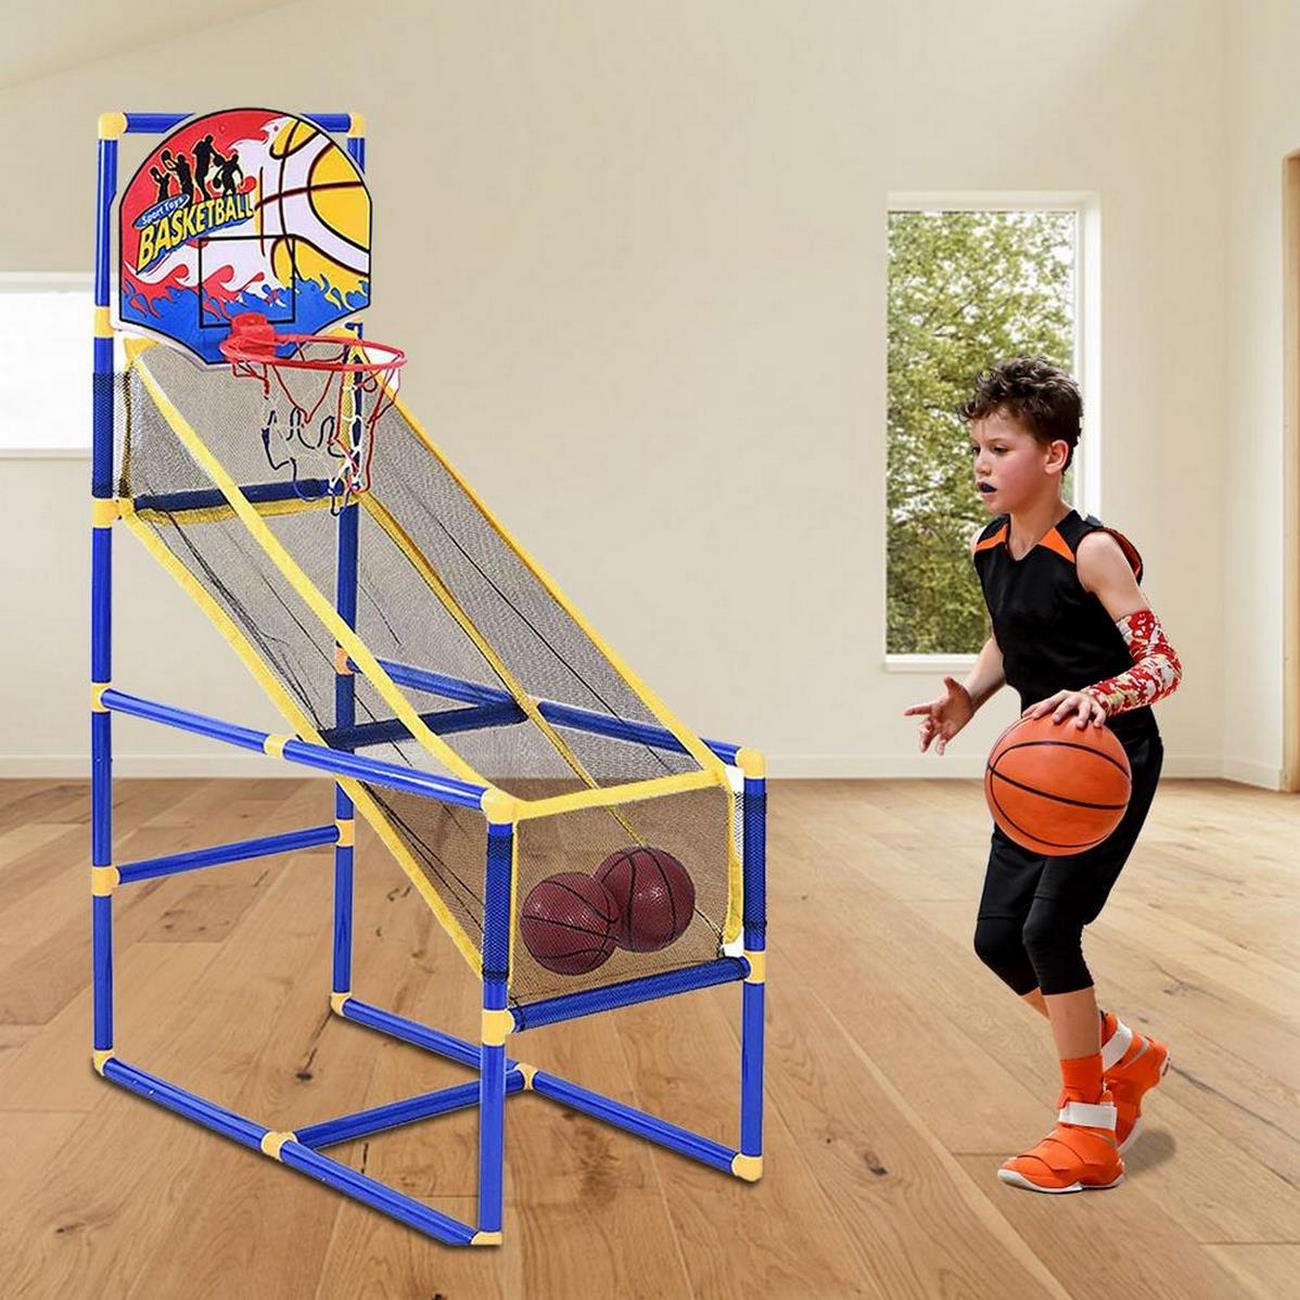 Cancha Canasta Baloncesto Niño Basketbal Mini Pared DAYOSHOP